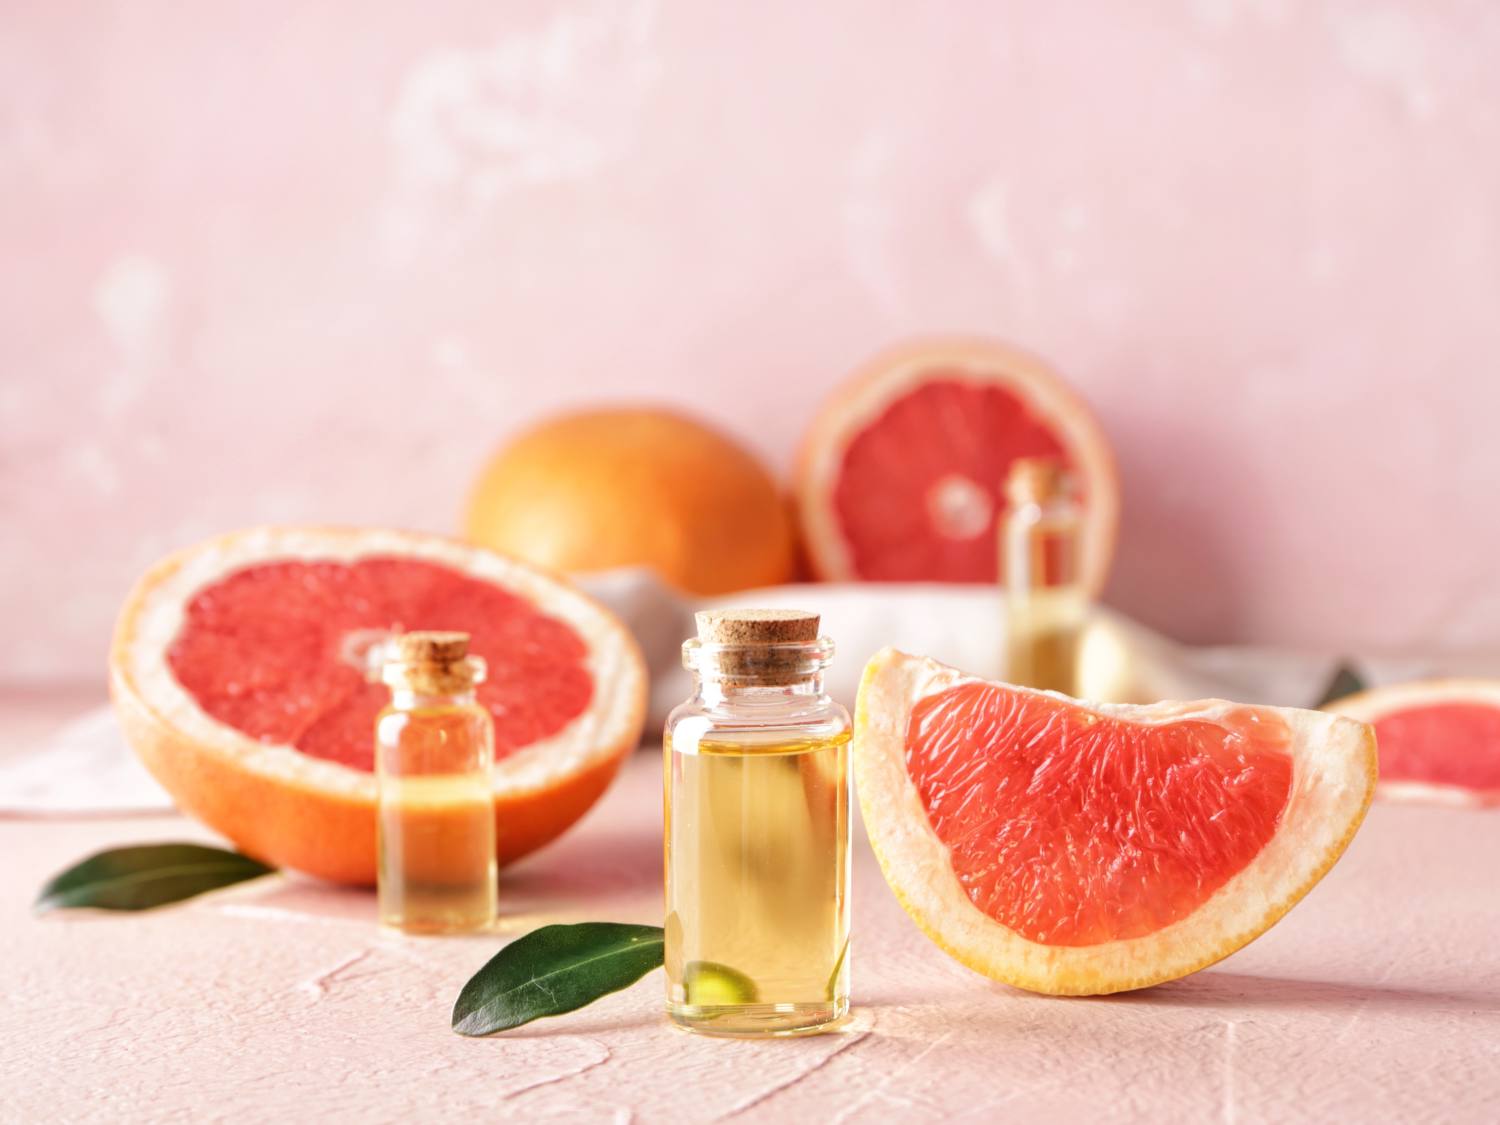 Grapefruit health benefits